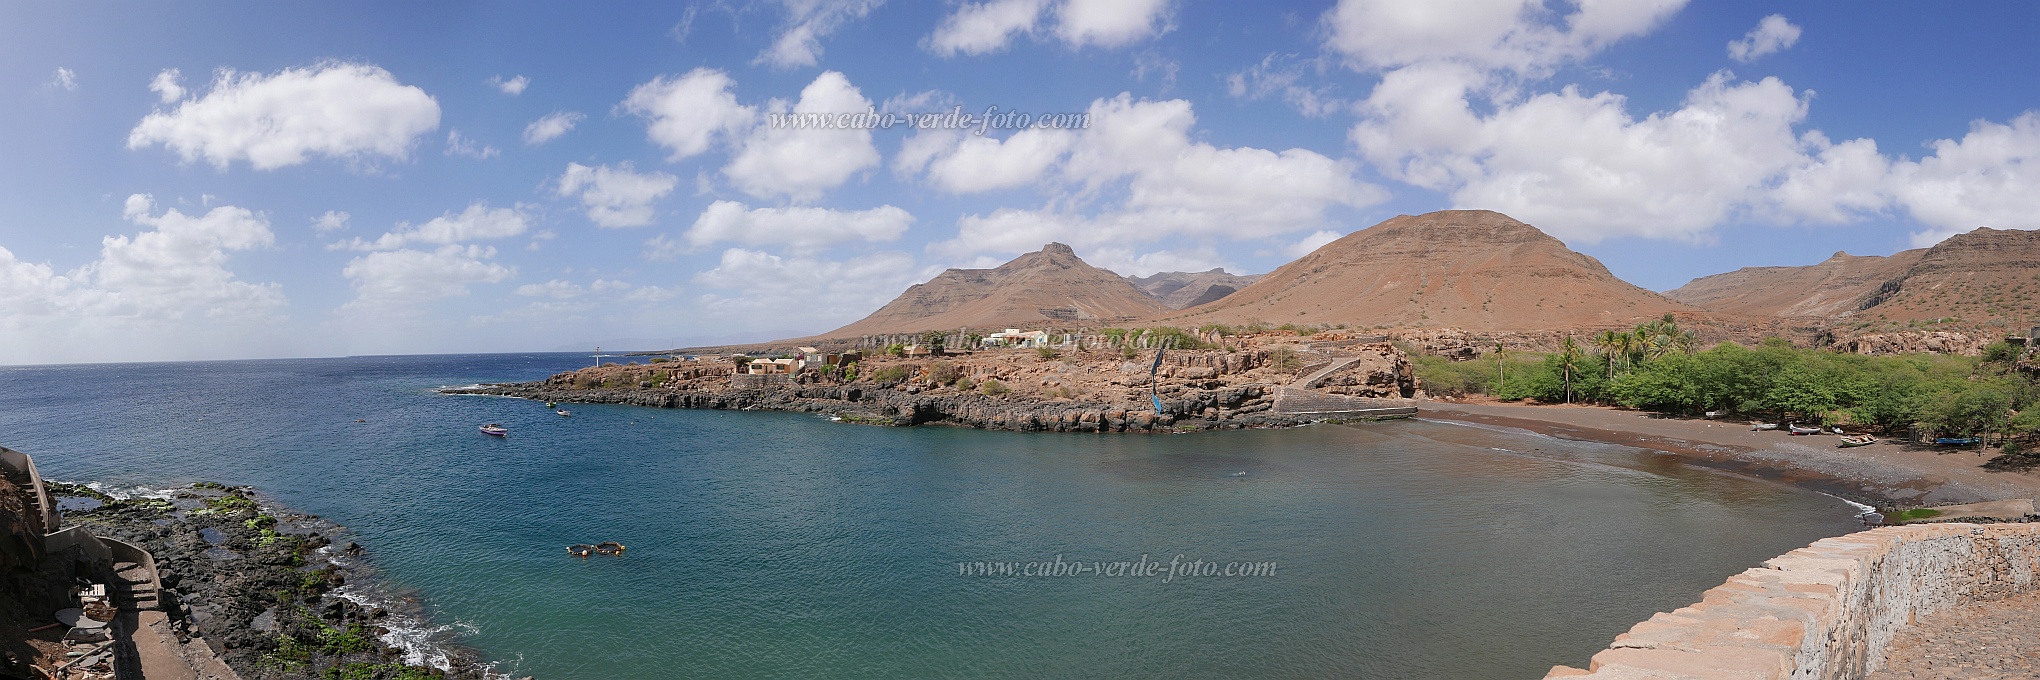 São Nicolau : Carrical : bay : Landscape SeaCabo Verde Foto Gallery